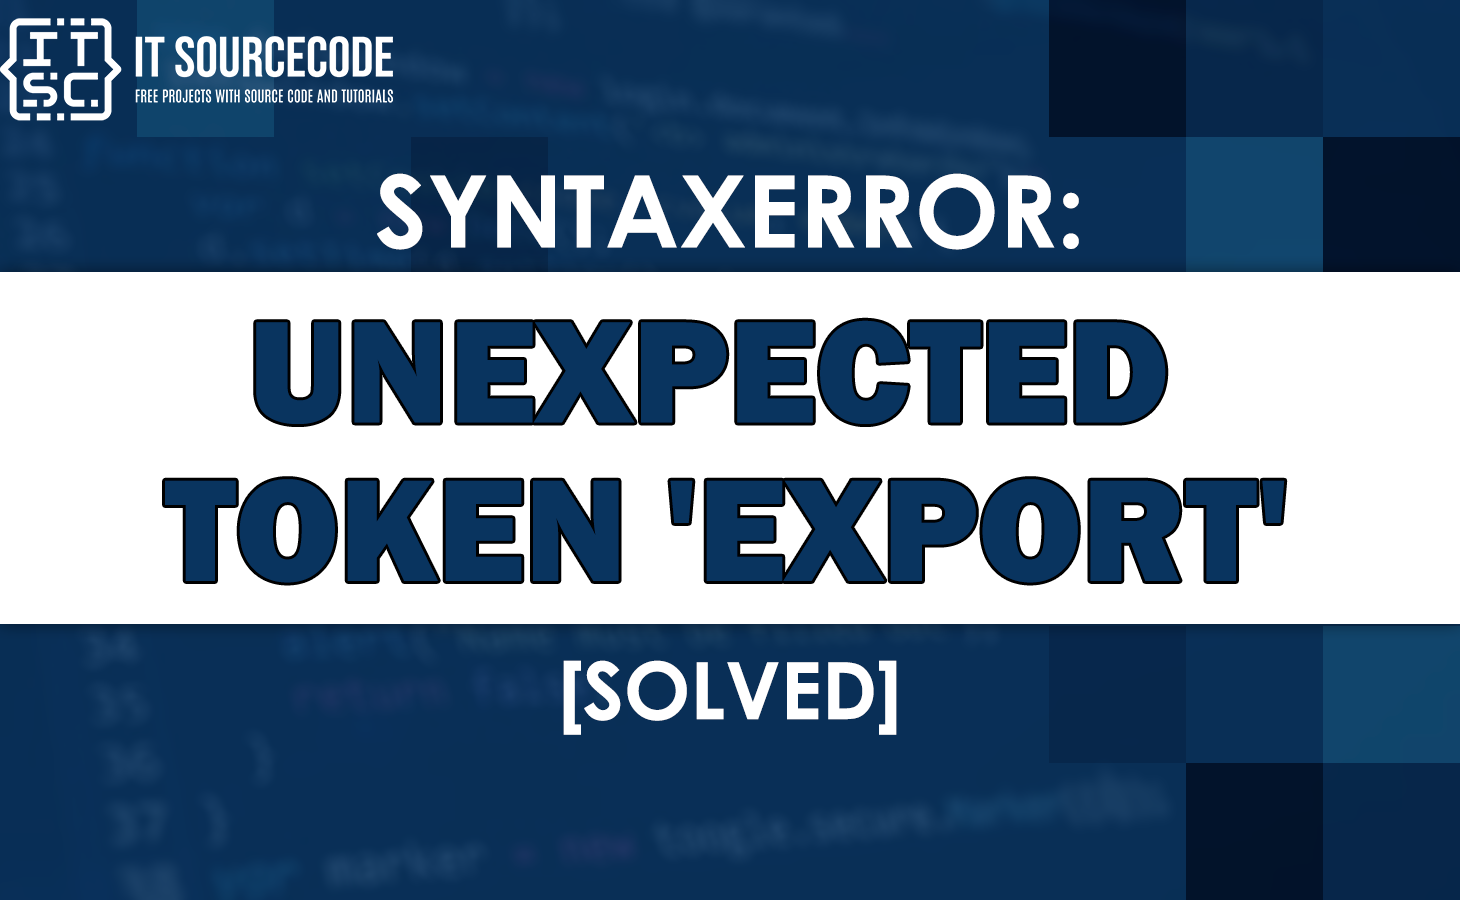 Syntaxerror: unexpected token export